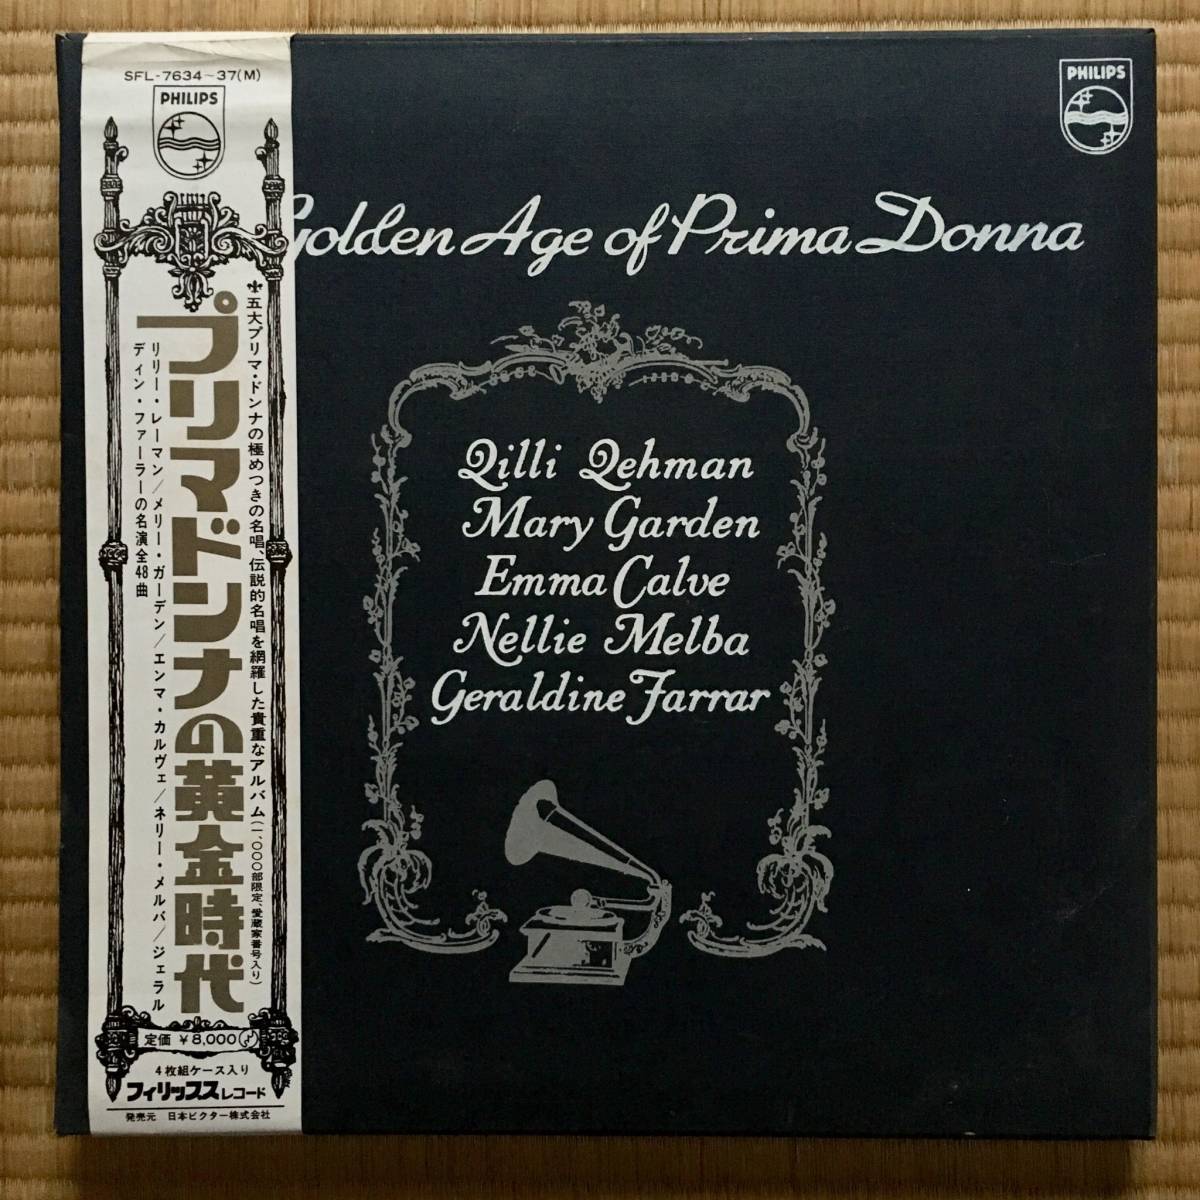 《４枚組LP》『プリマドンナの黄金時代』～リリー・レーマン/メリー・ガーデン/エンマ・カルヴァ/ジェラルディン・ファーラー